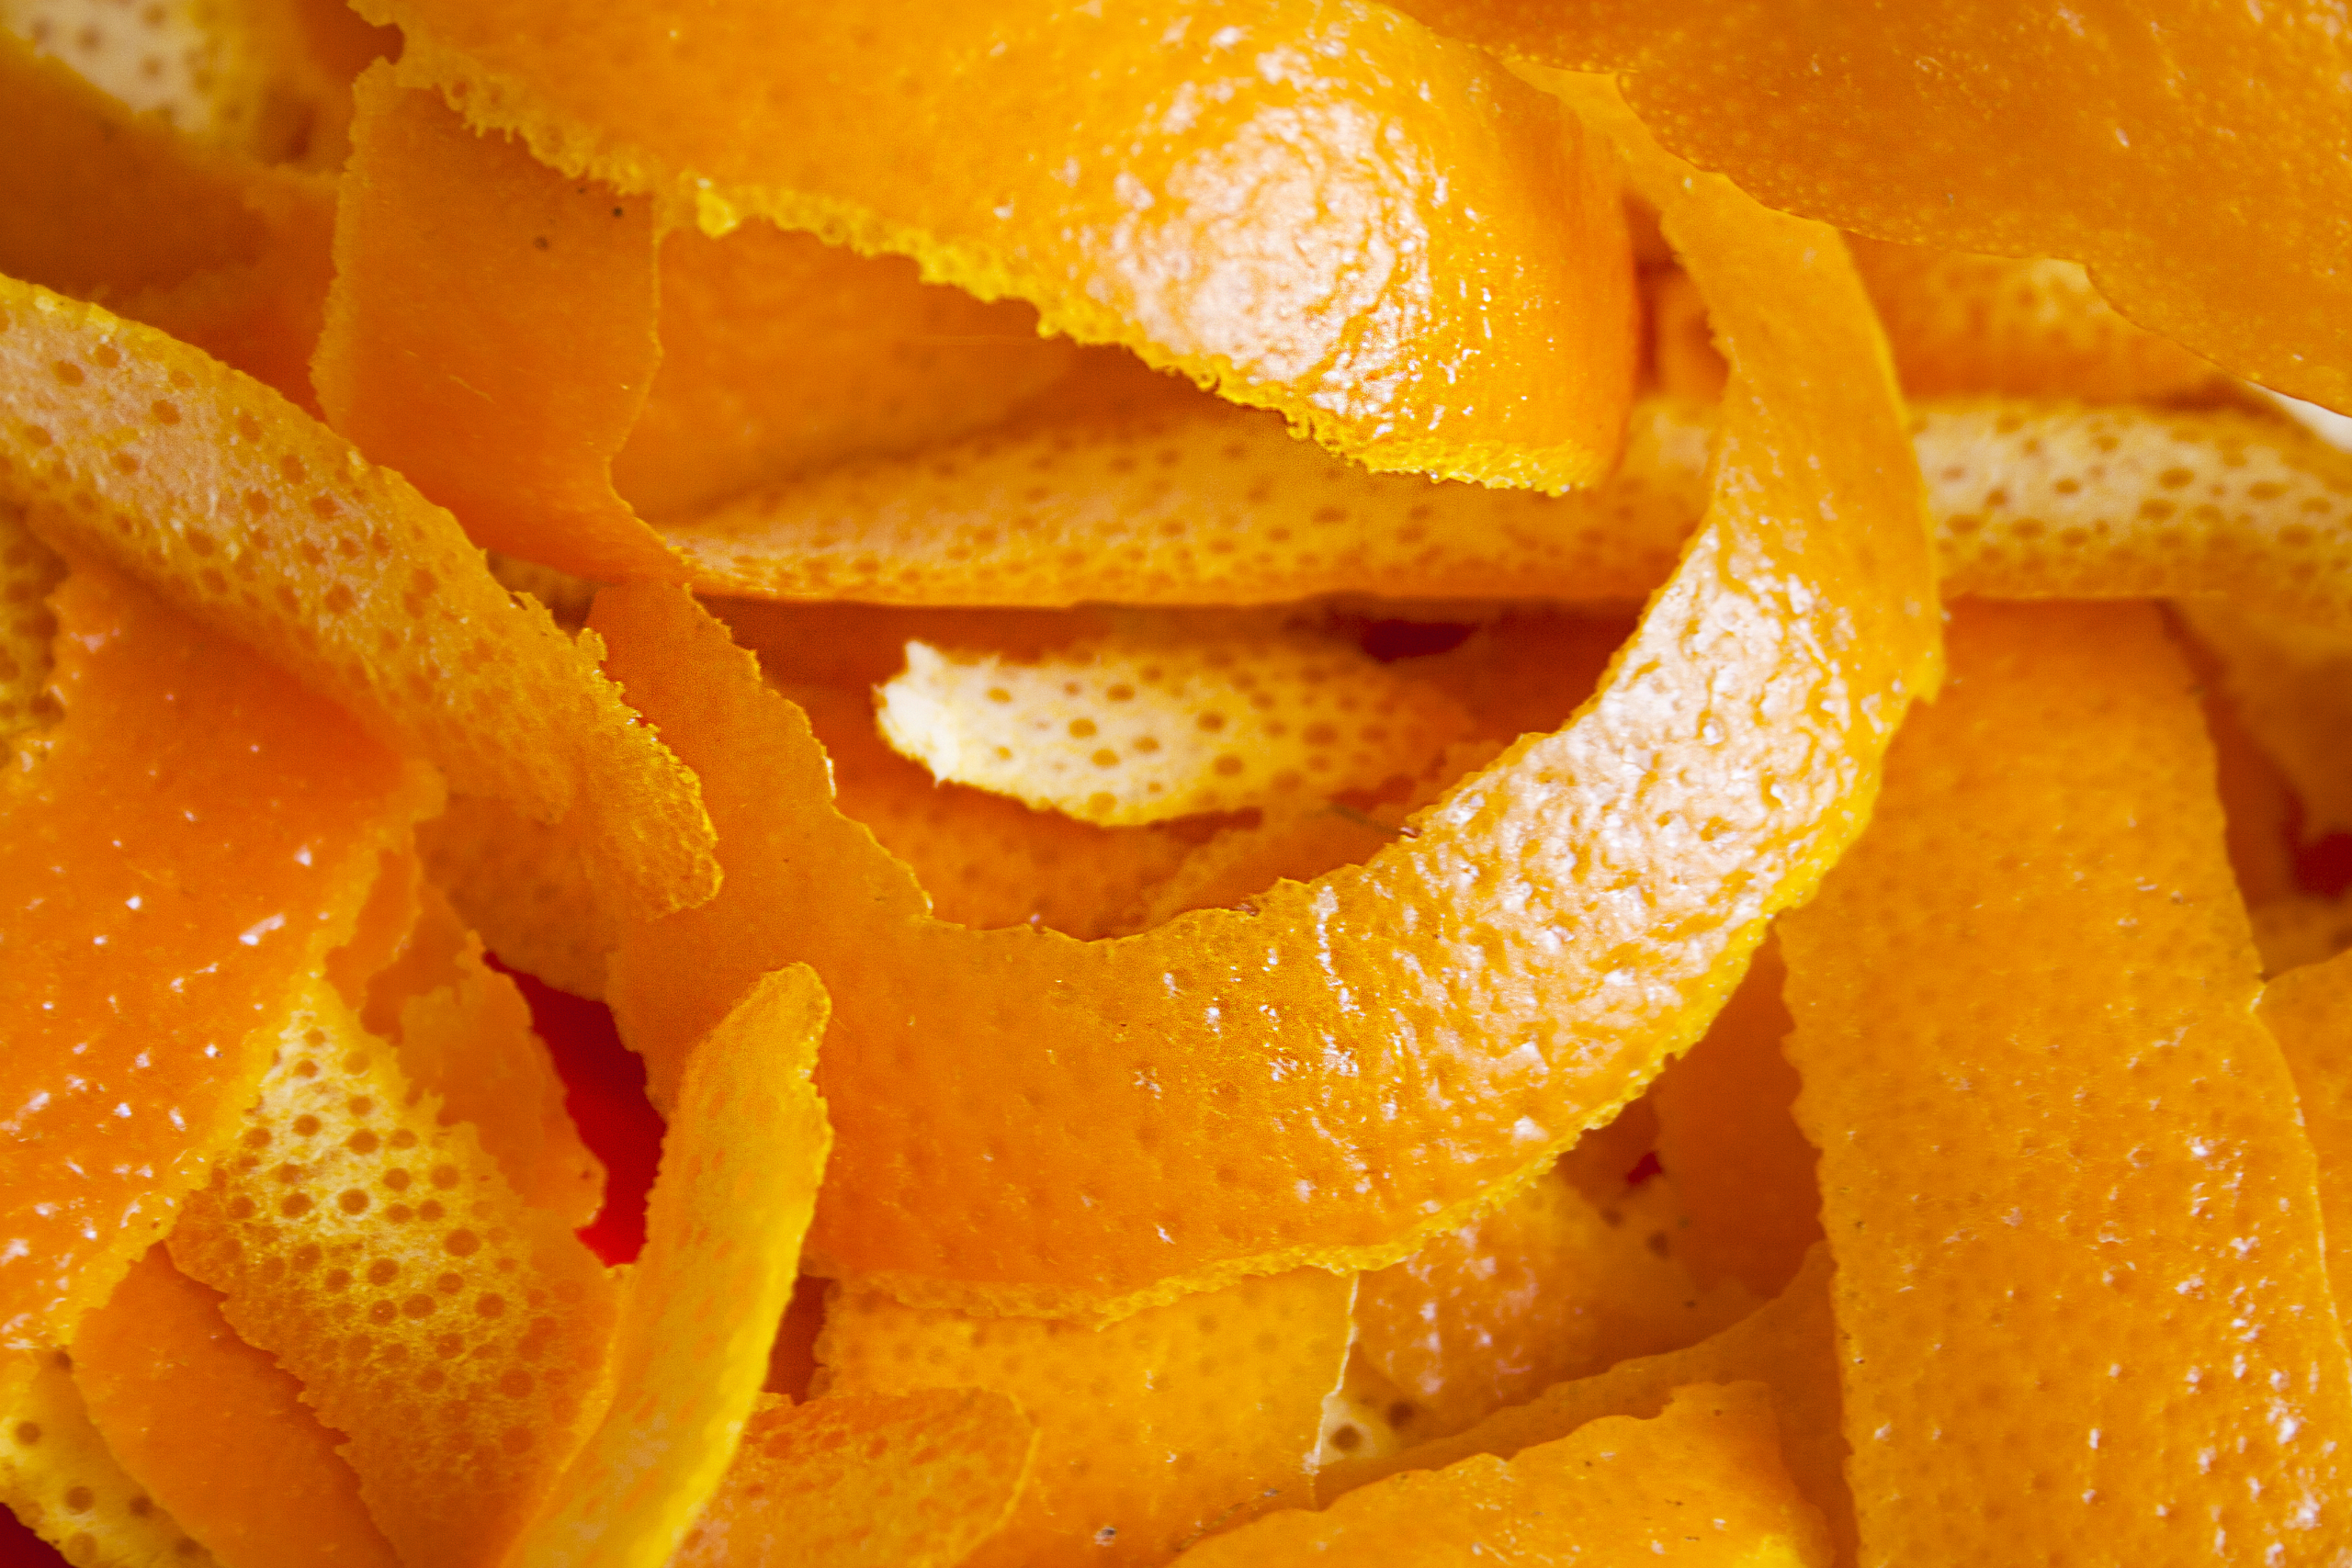 Vỏ cam có thể dùng để làm bình xịt tẩy rửa. (Ảnh: Shutterstock)